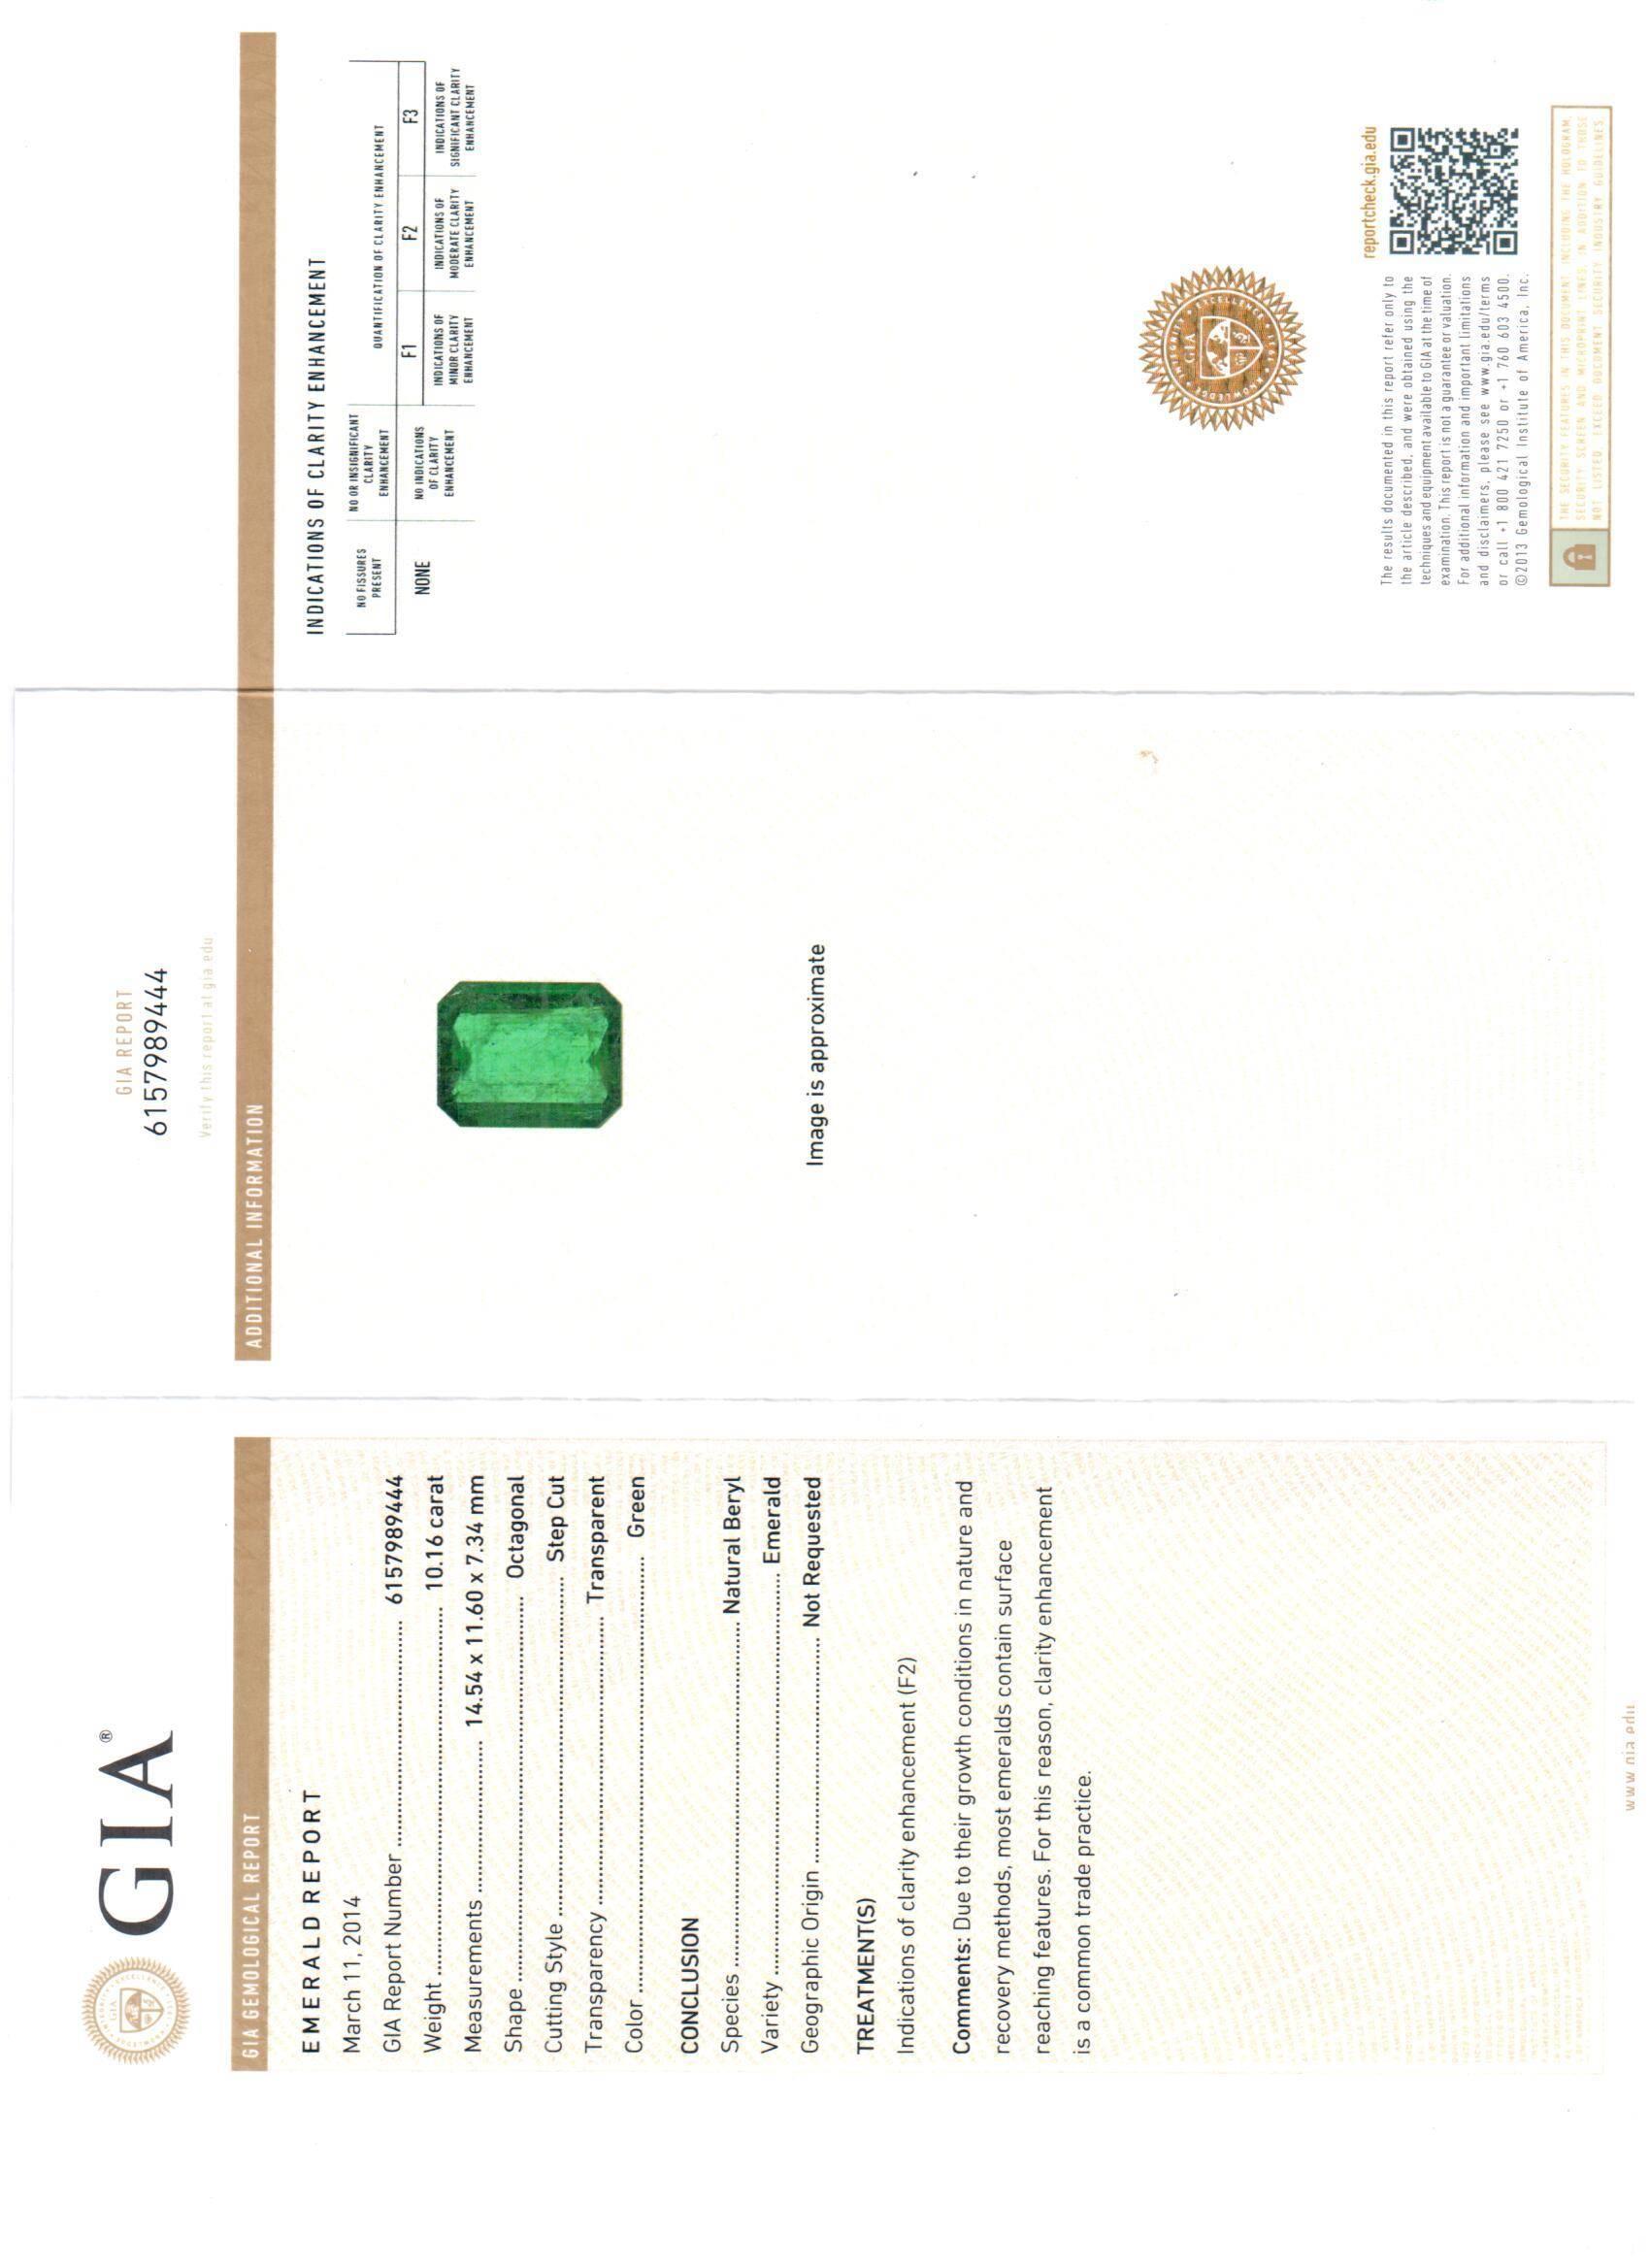 Klassische grüne Smaragd-Diamant-Ohrringe mit GIA-zertifizierten natürlichen Smaragden, Smaragd-Schliff Form 10,16 Karat & 10,21 Karat mit 5,70 Karat Diamanten rundum in 18kt Weißgold gefasst.